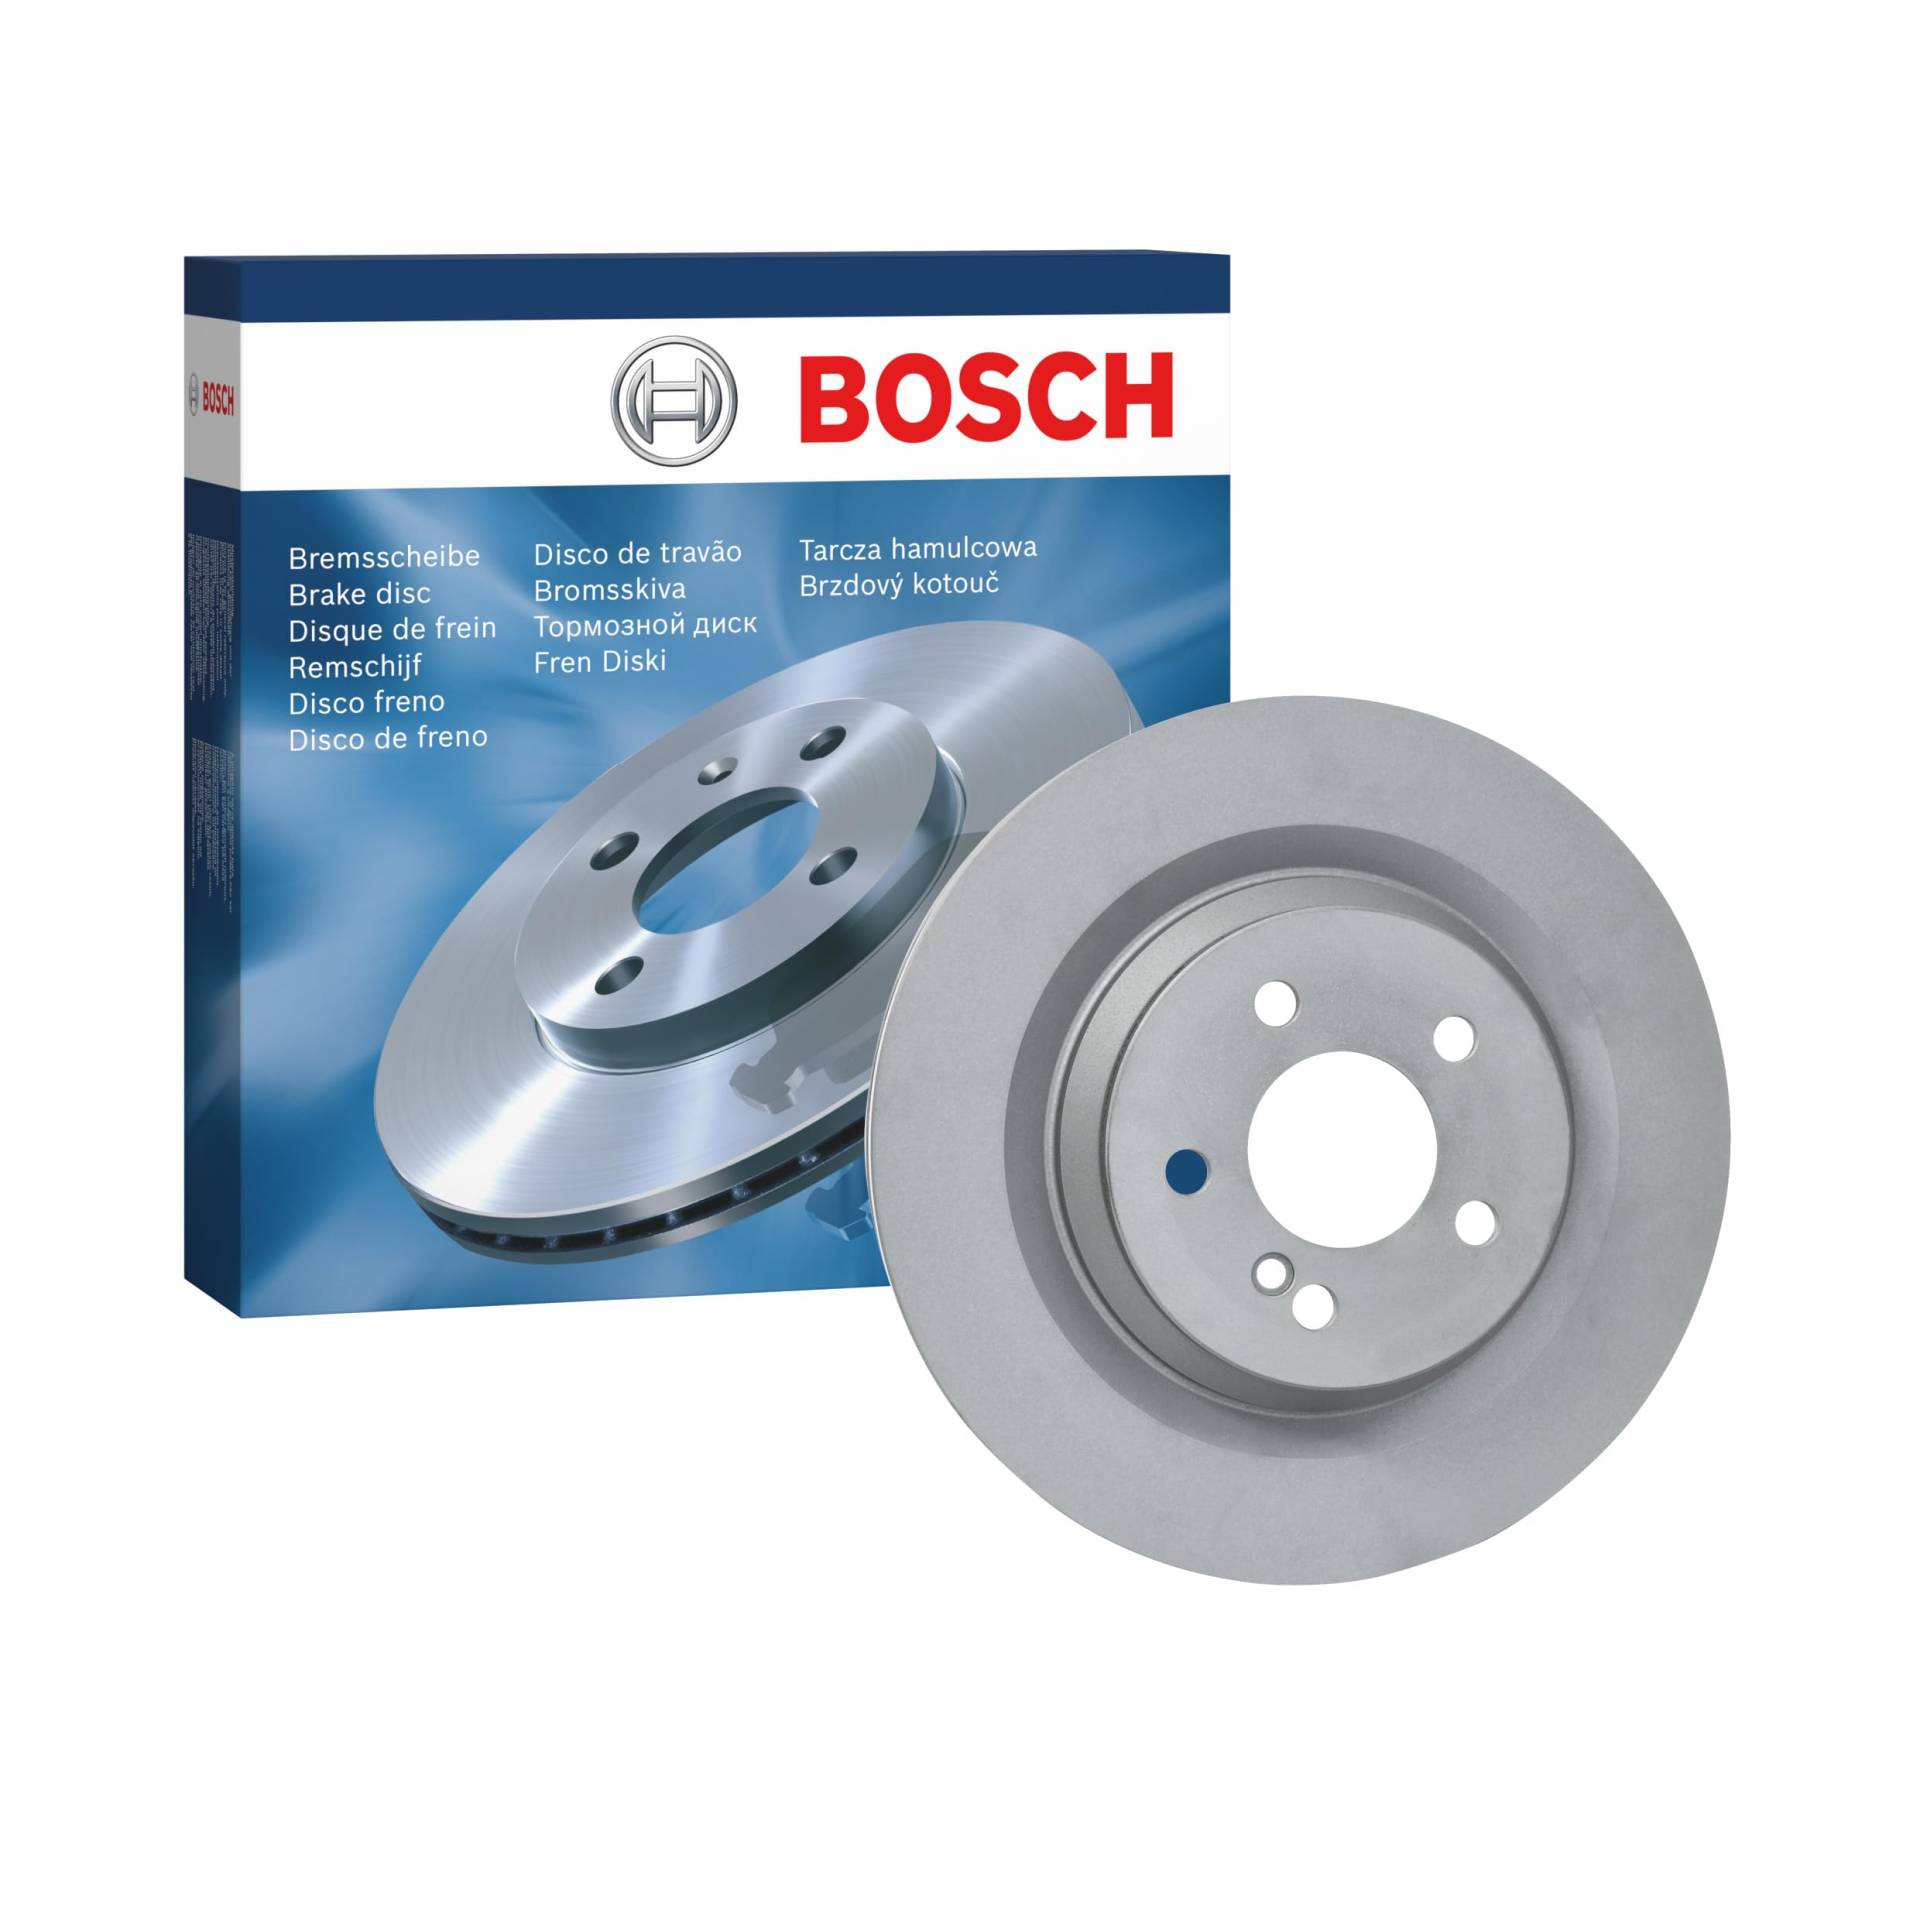 Bosch BD1474 Bremsscheiben - Hinterachse - ECE-R90 Zertifizierung - eine Bremsscheibe von Bosch Automotive